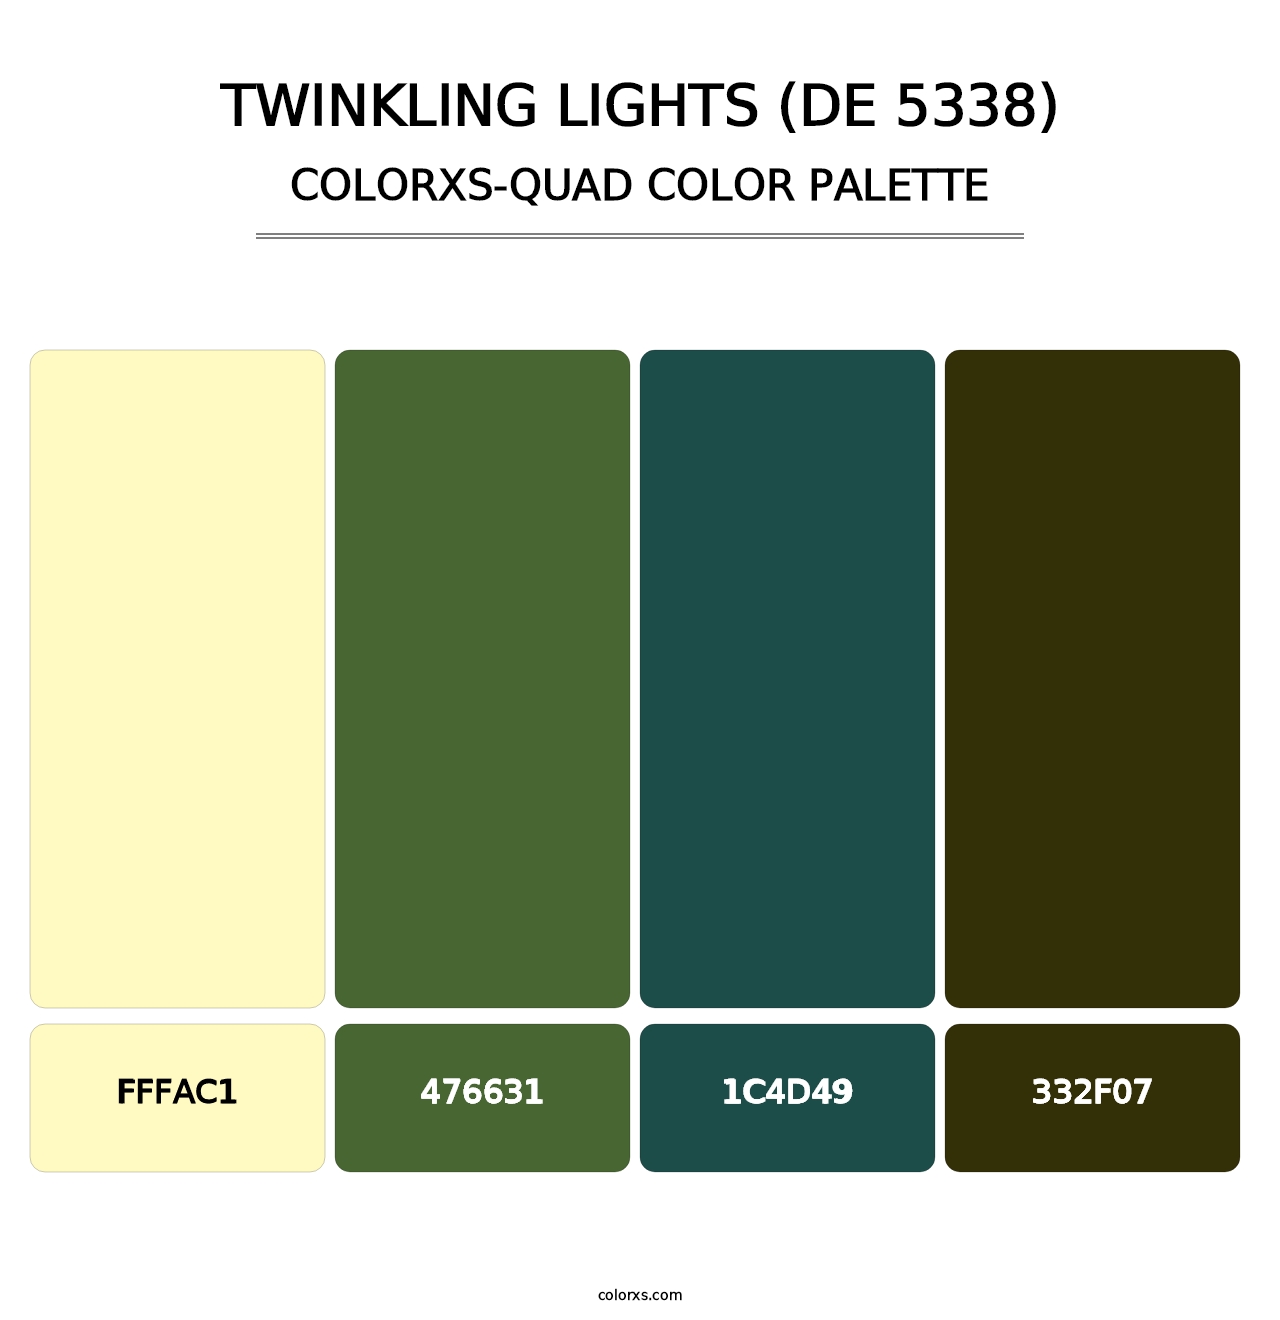 Twinkling Lights (DE 5338) - Colorxs Quad Palette